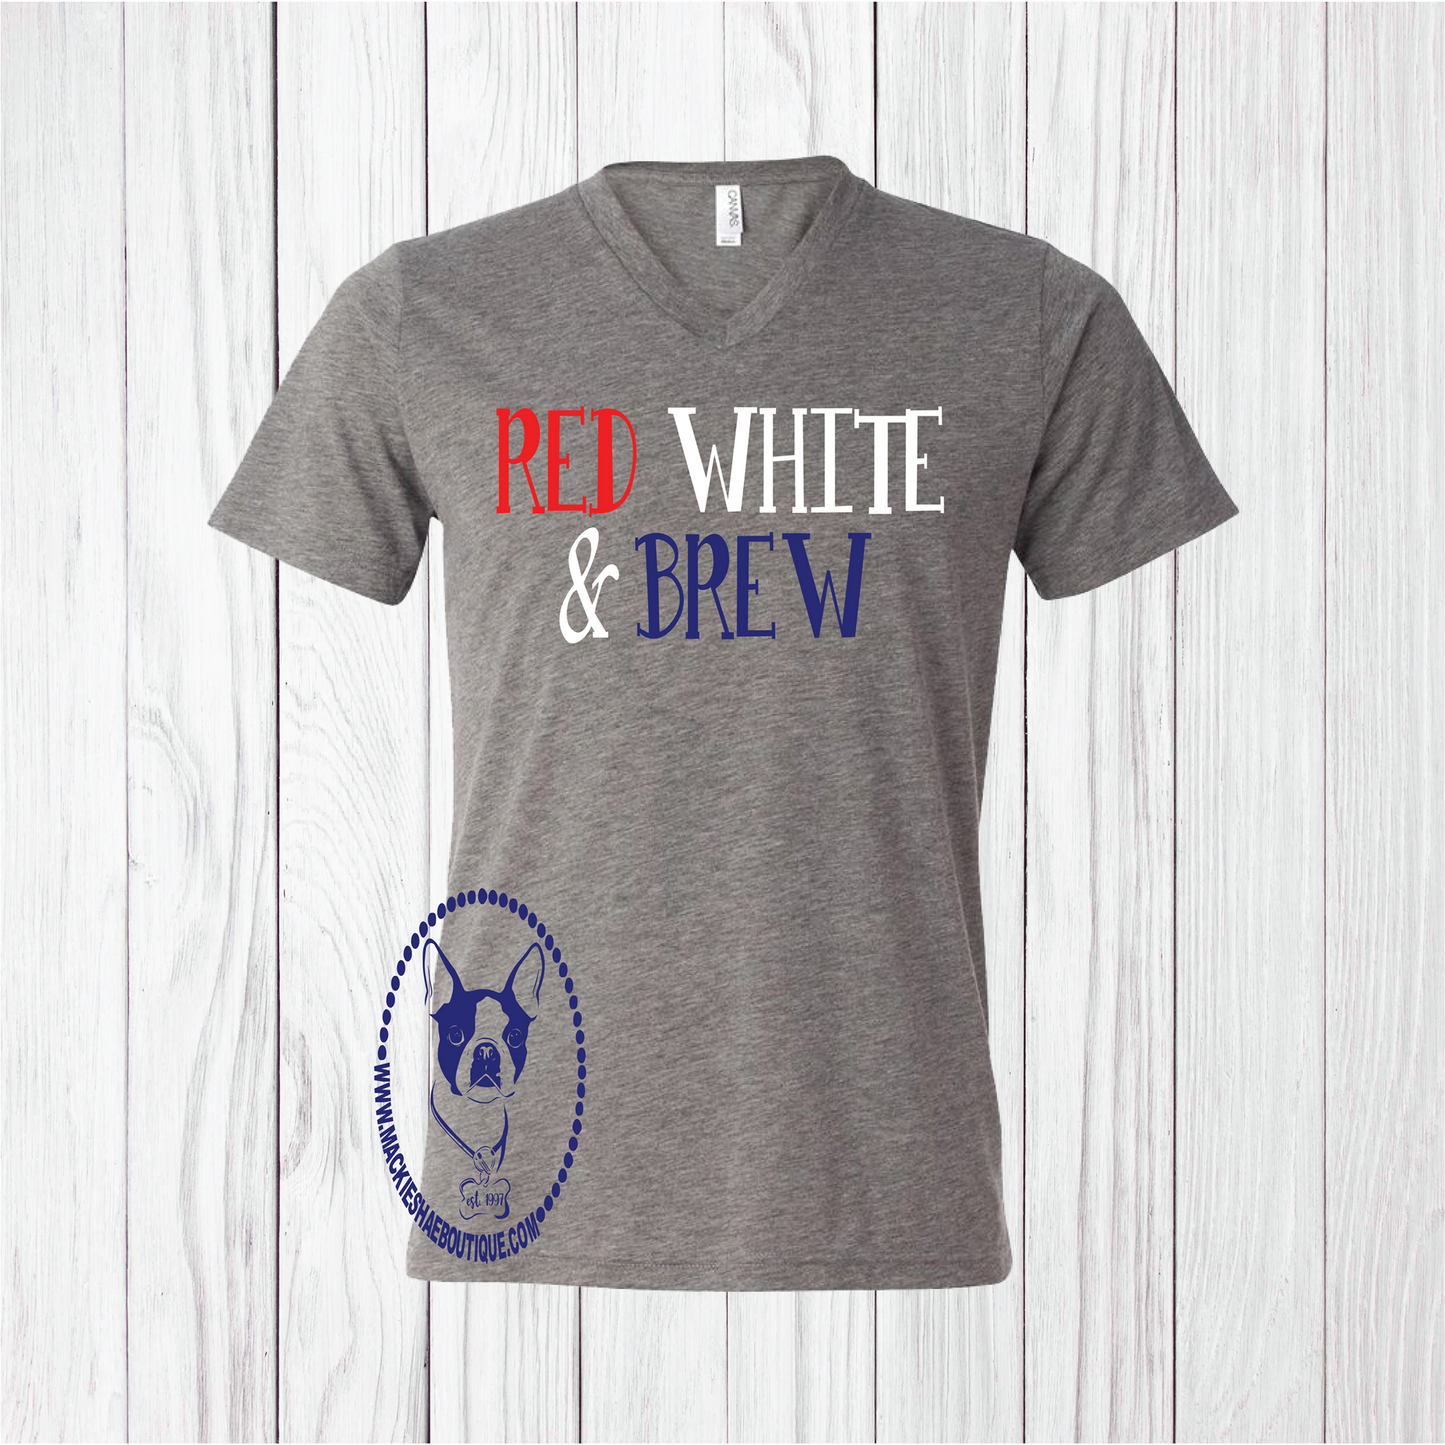 Red White & Brew Custom Shirt, Short Sleeve